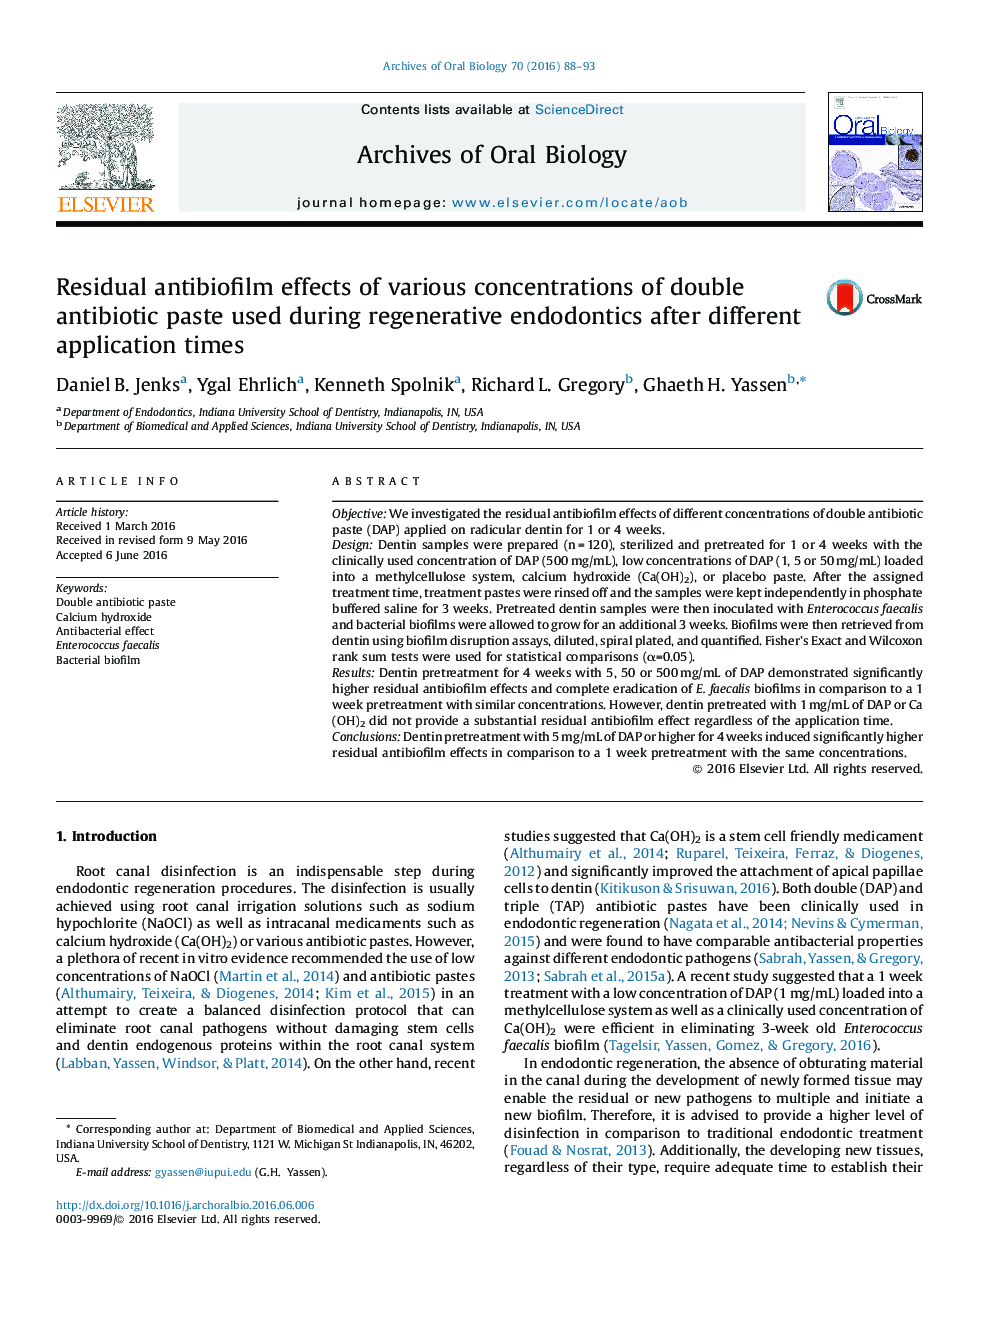 اثرات آنتی بیوفیلم باقی مانده از غلظت های مختلف آنتی بیوتیک دوگانه مورد استفاده در اندودنتیکس بازسازی شده پس از زمان های مختلف کاربرد 